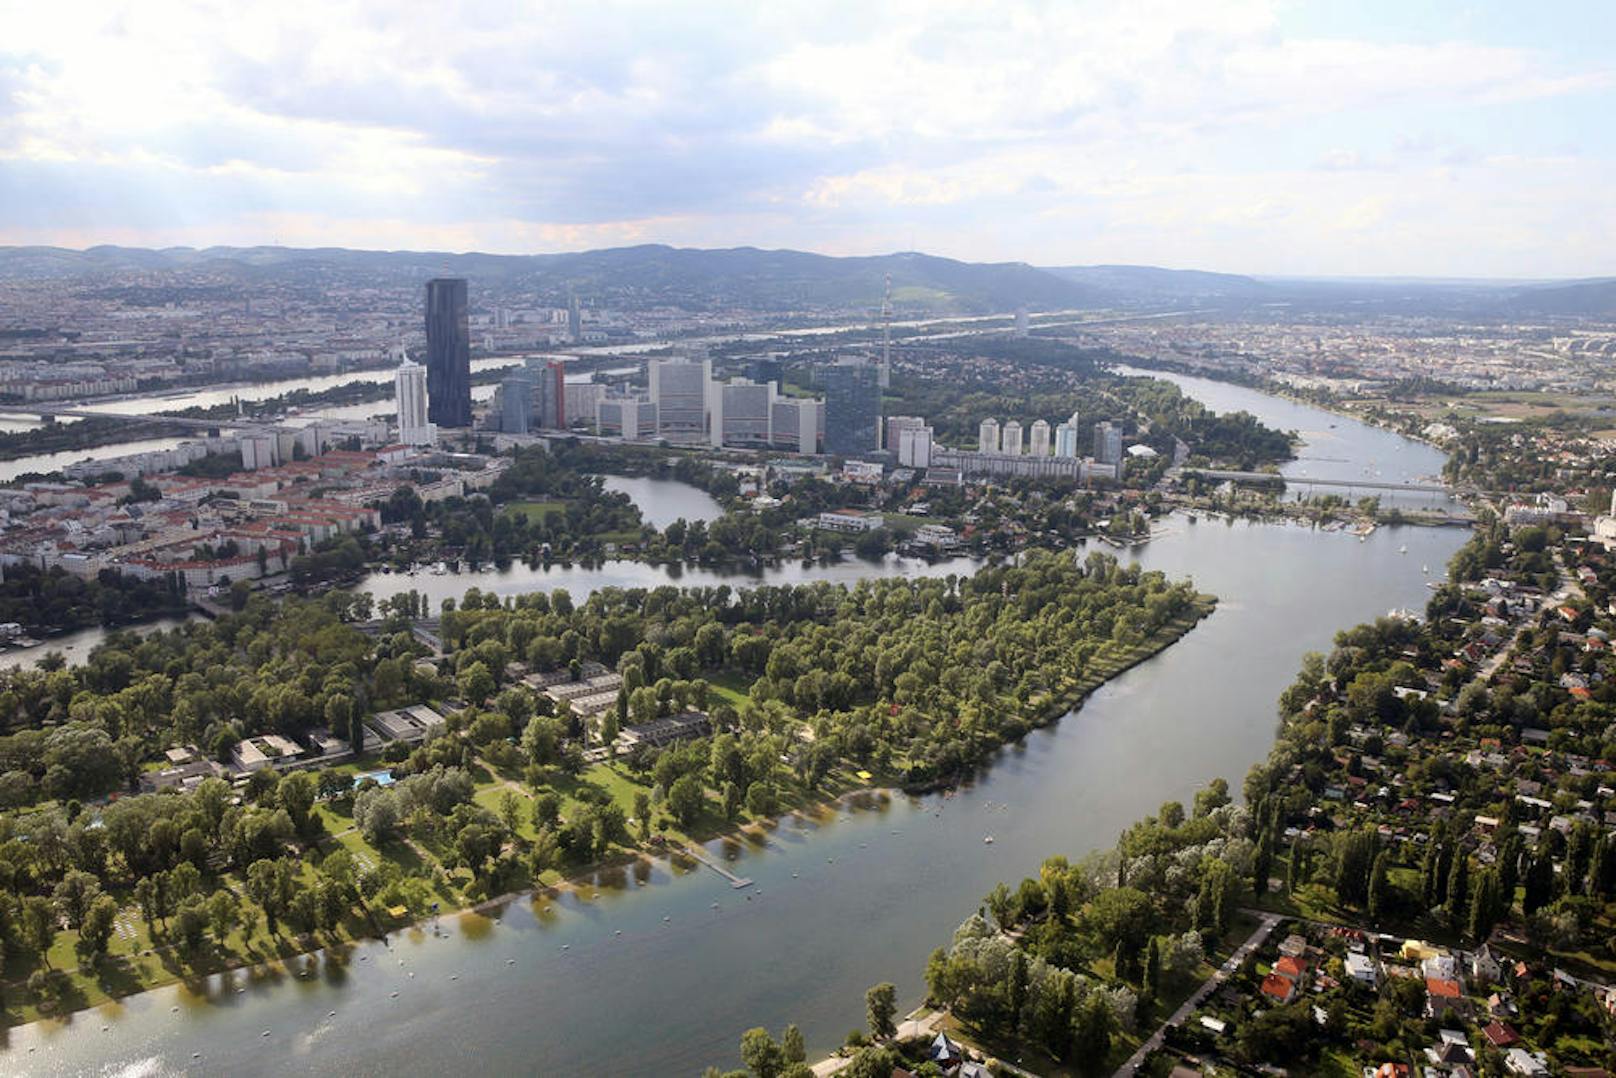 <b>Alte Donau, 21, und 22. Bezirk:</b> Die Alte Donau ist eines der beliebtesten Naherholungsgebiete Wiens. Auch das Gänsehäufel befindet sich dort.